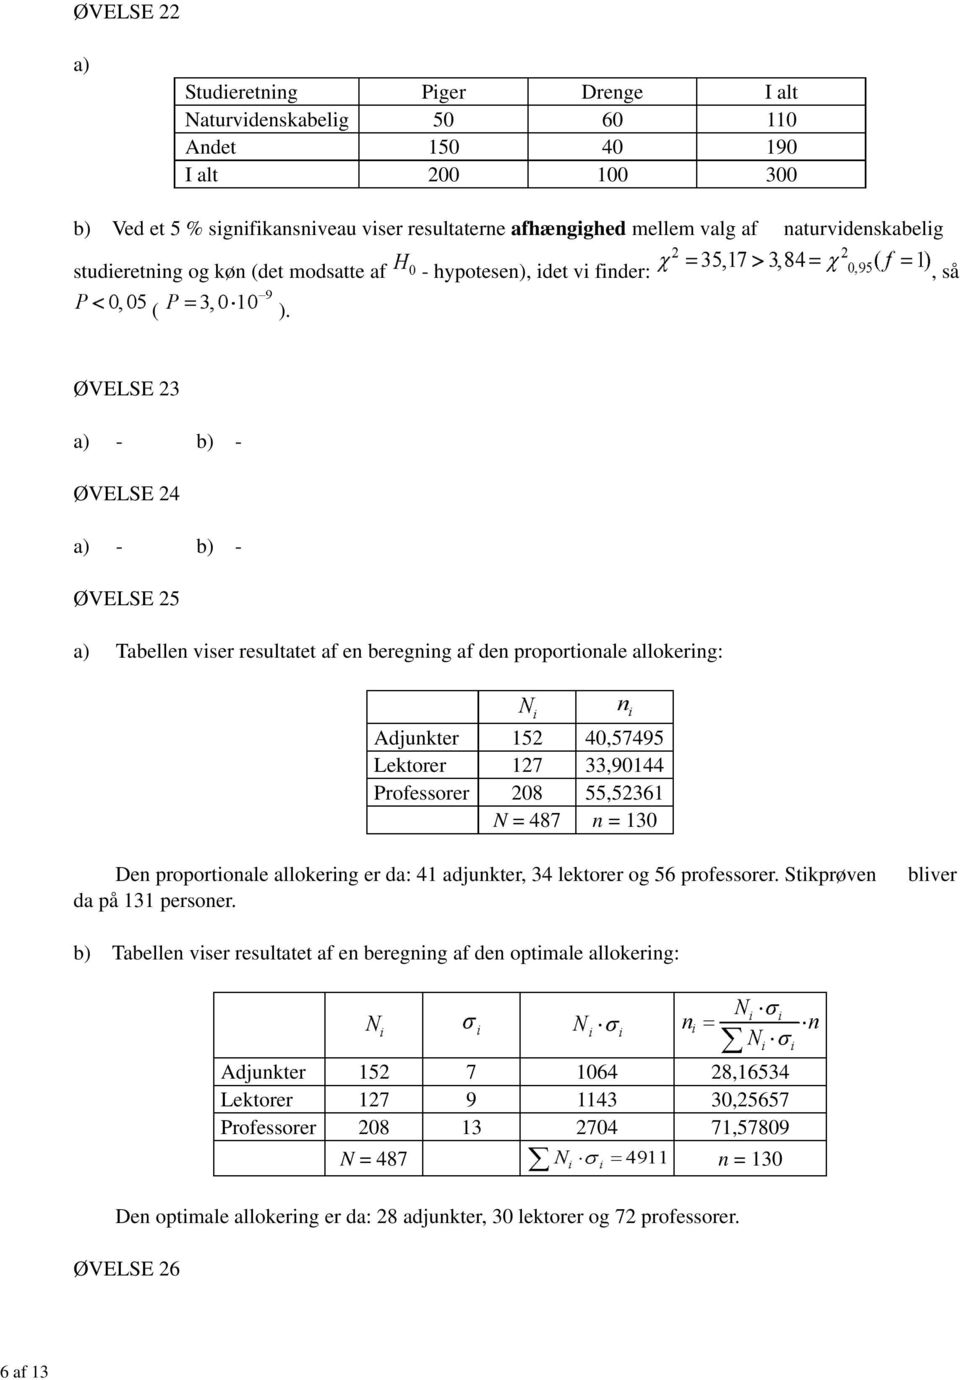 ØVELSE 23 - - ØVELSE 24 - - ØVELSE 25 Tabellen viser resultatet af en beregning af den proportionale allokering: Adjunkter 152 40,57495 Lektorer 127 33,90144 Professorer 208 55,52361 N = 487 n = 130